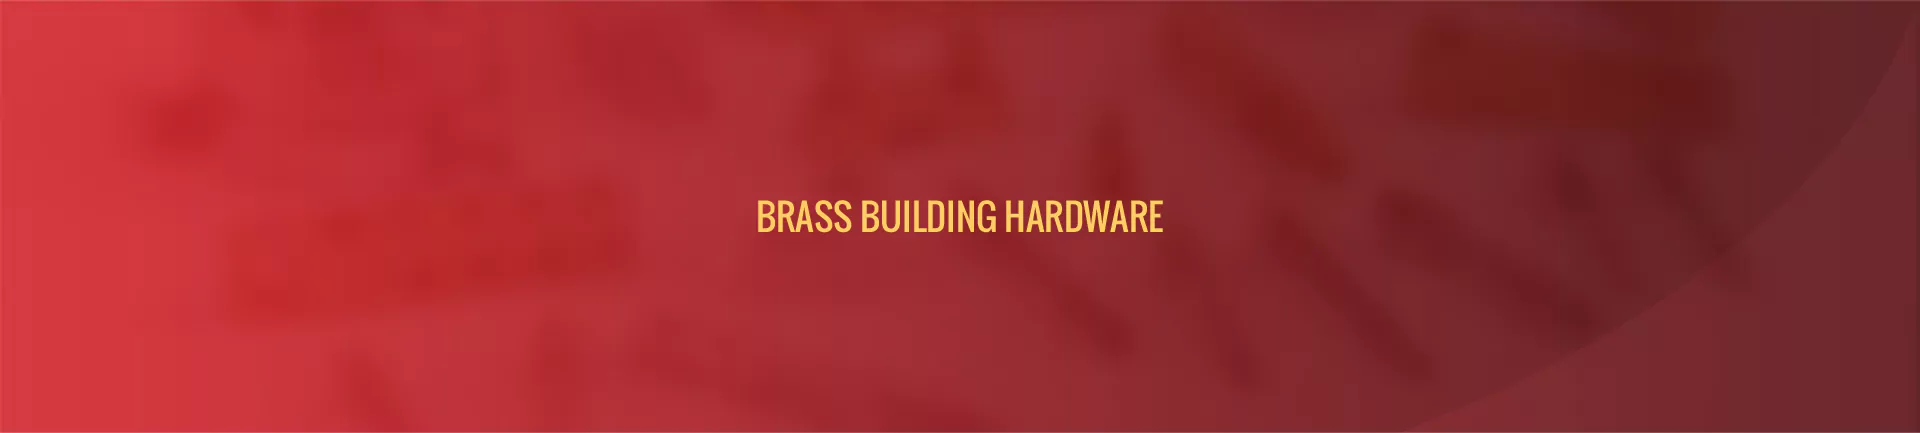 brass-building-hardware-banner